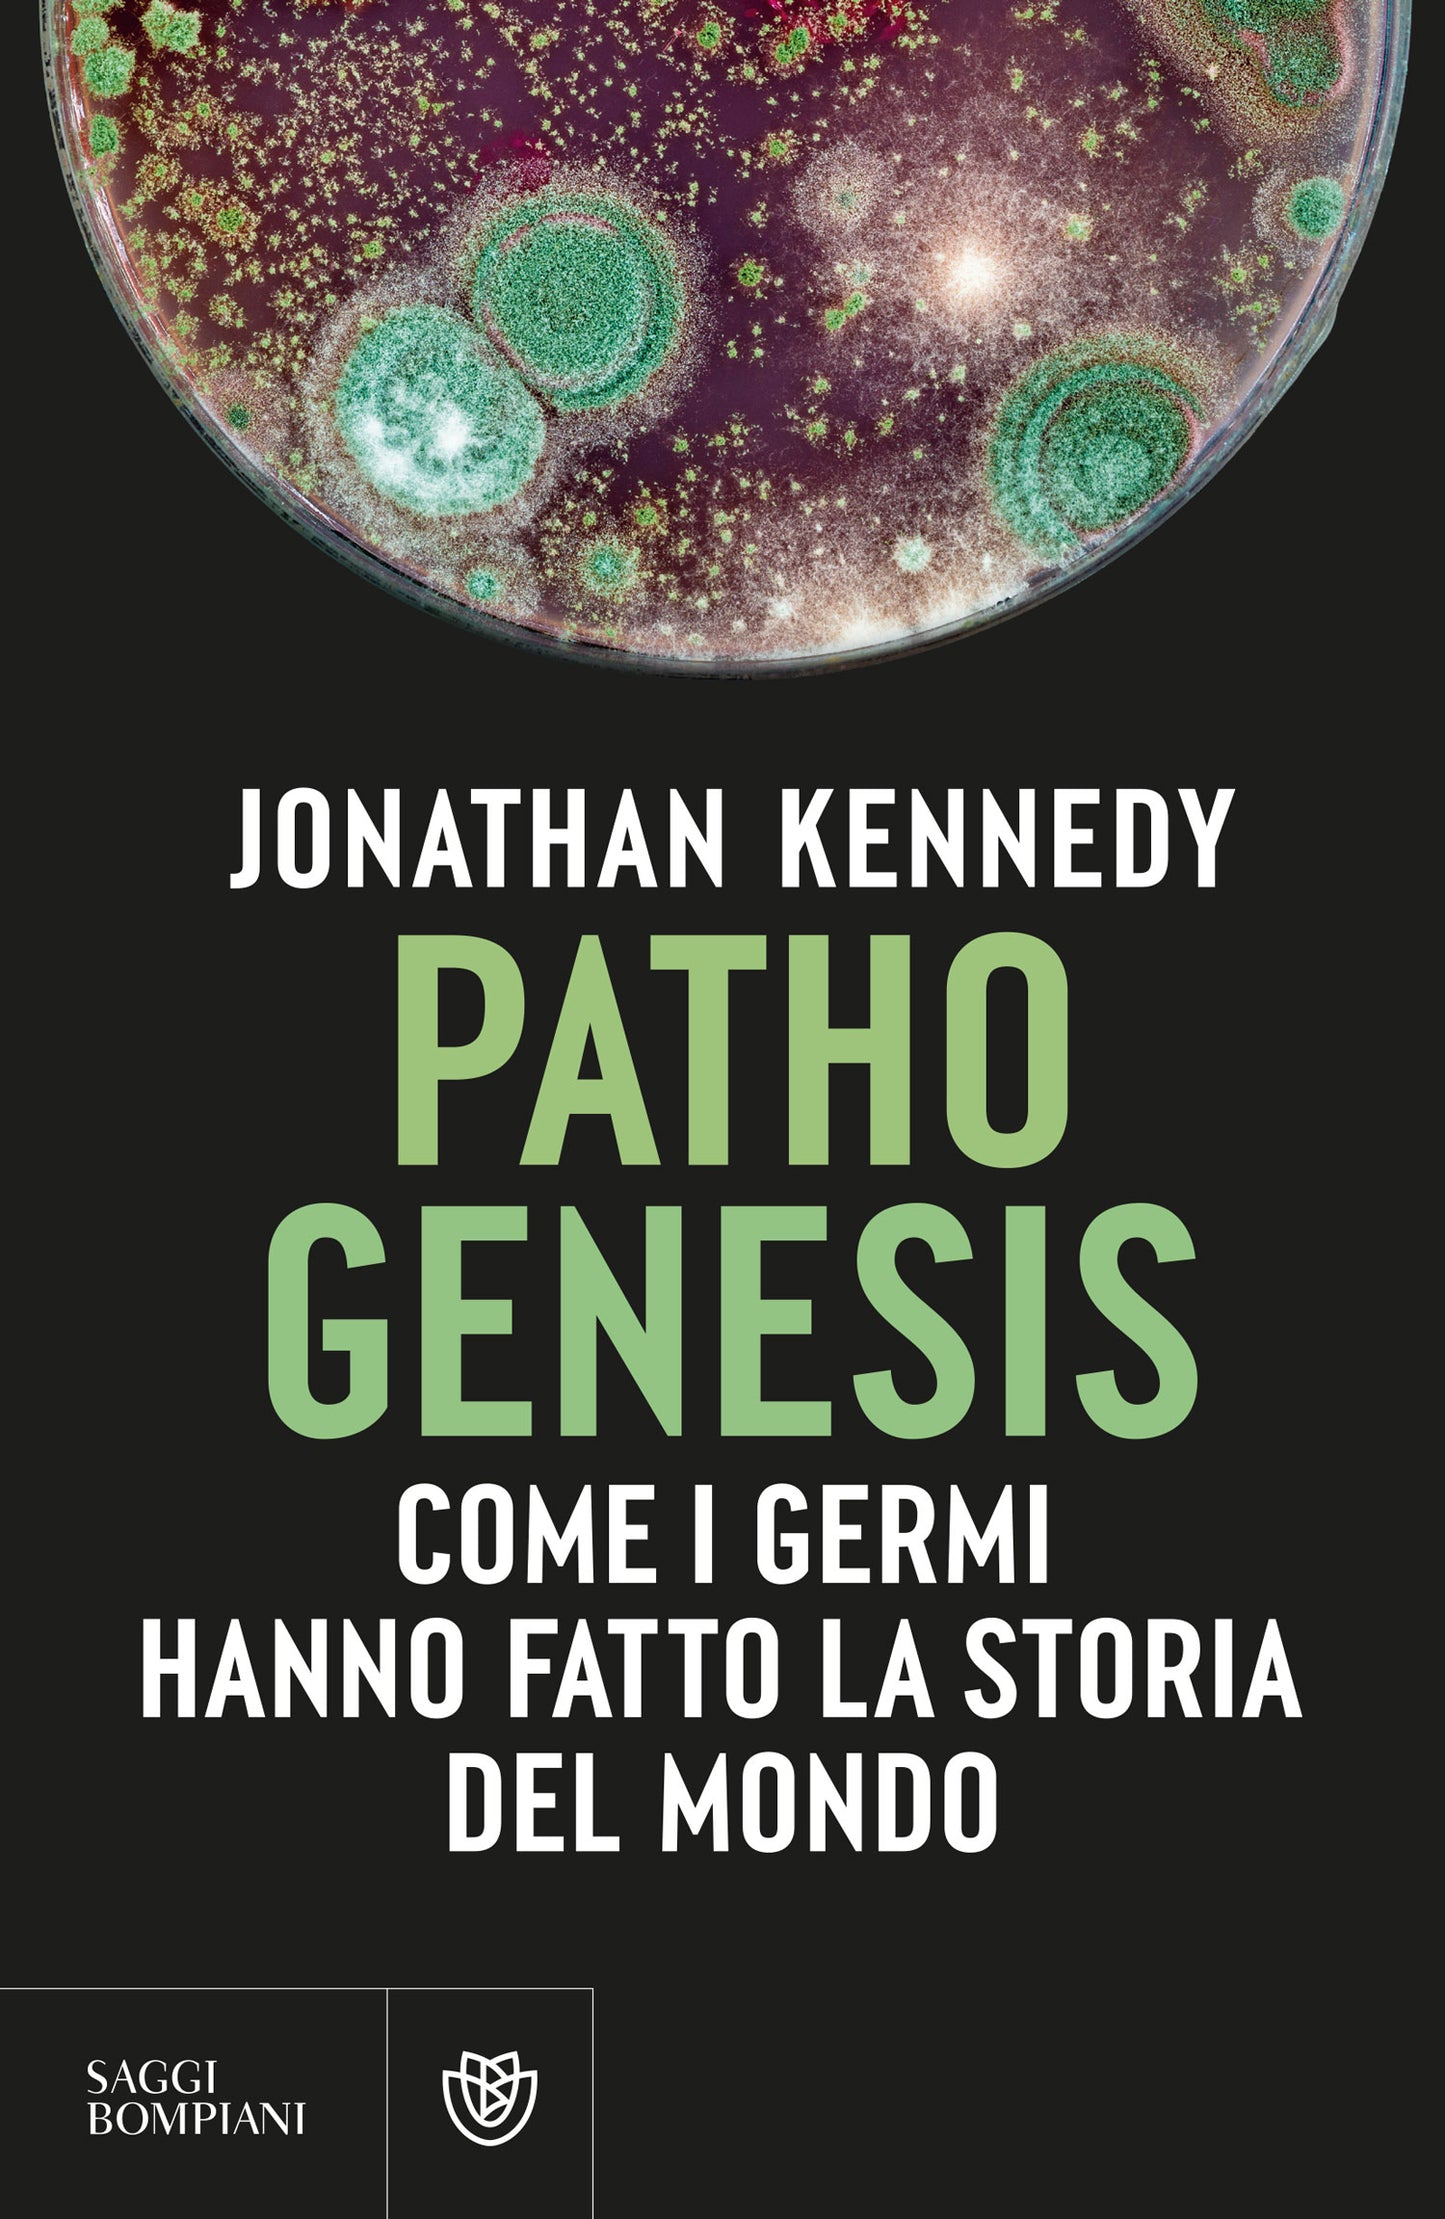 Pathogenesis::Come i germi hanno fatto la storia del mondo